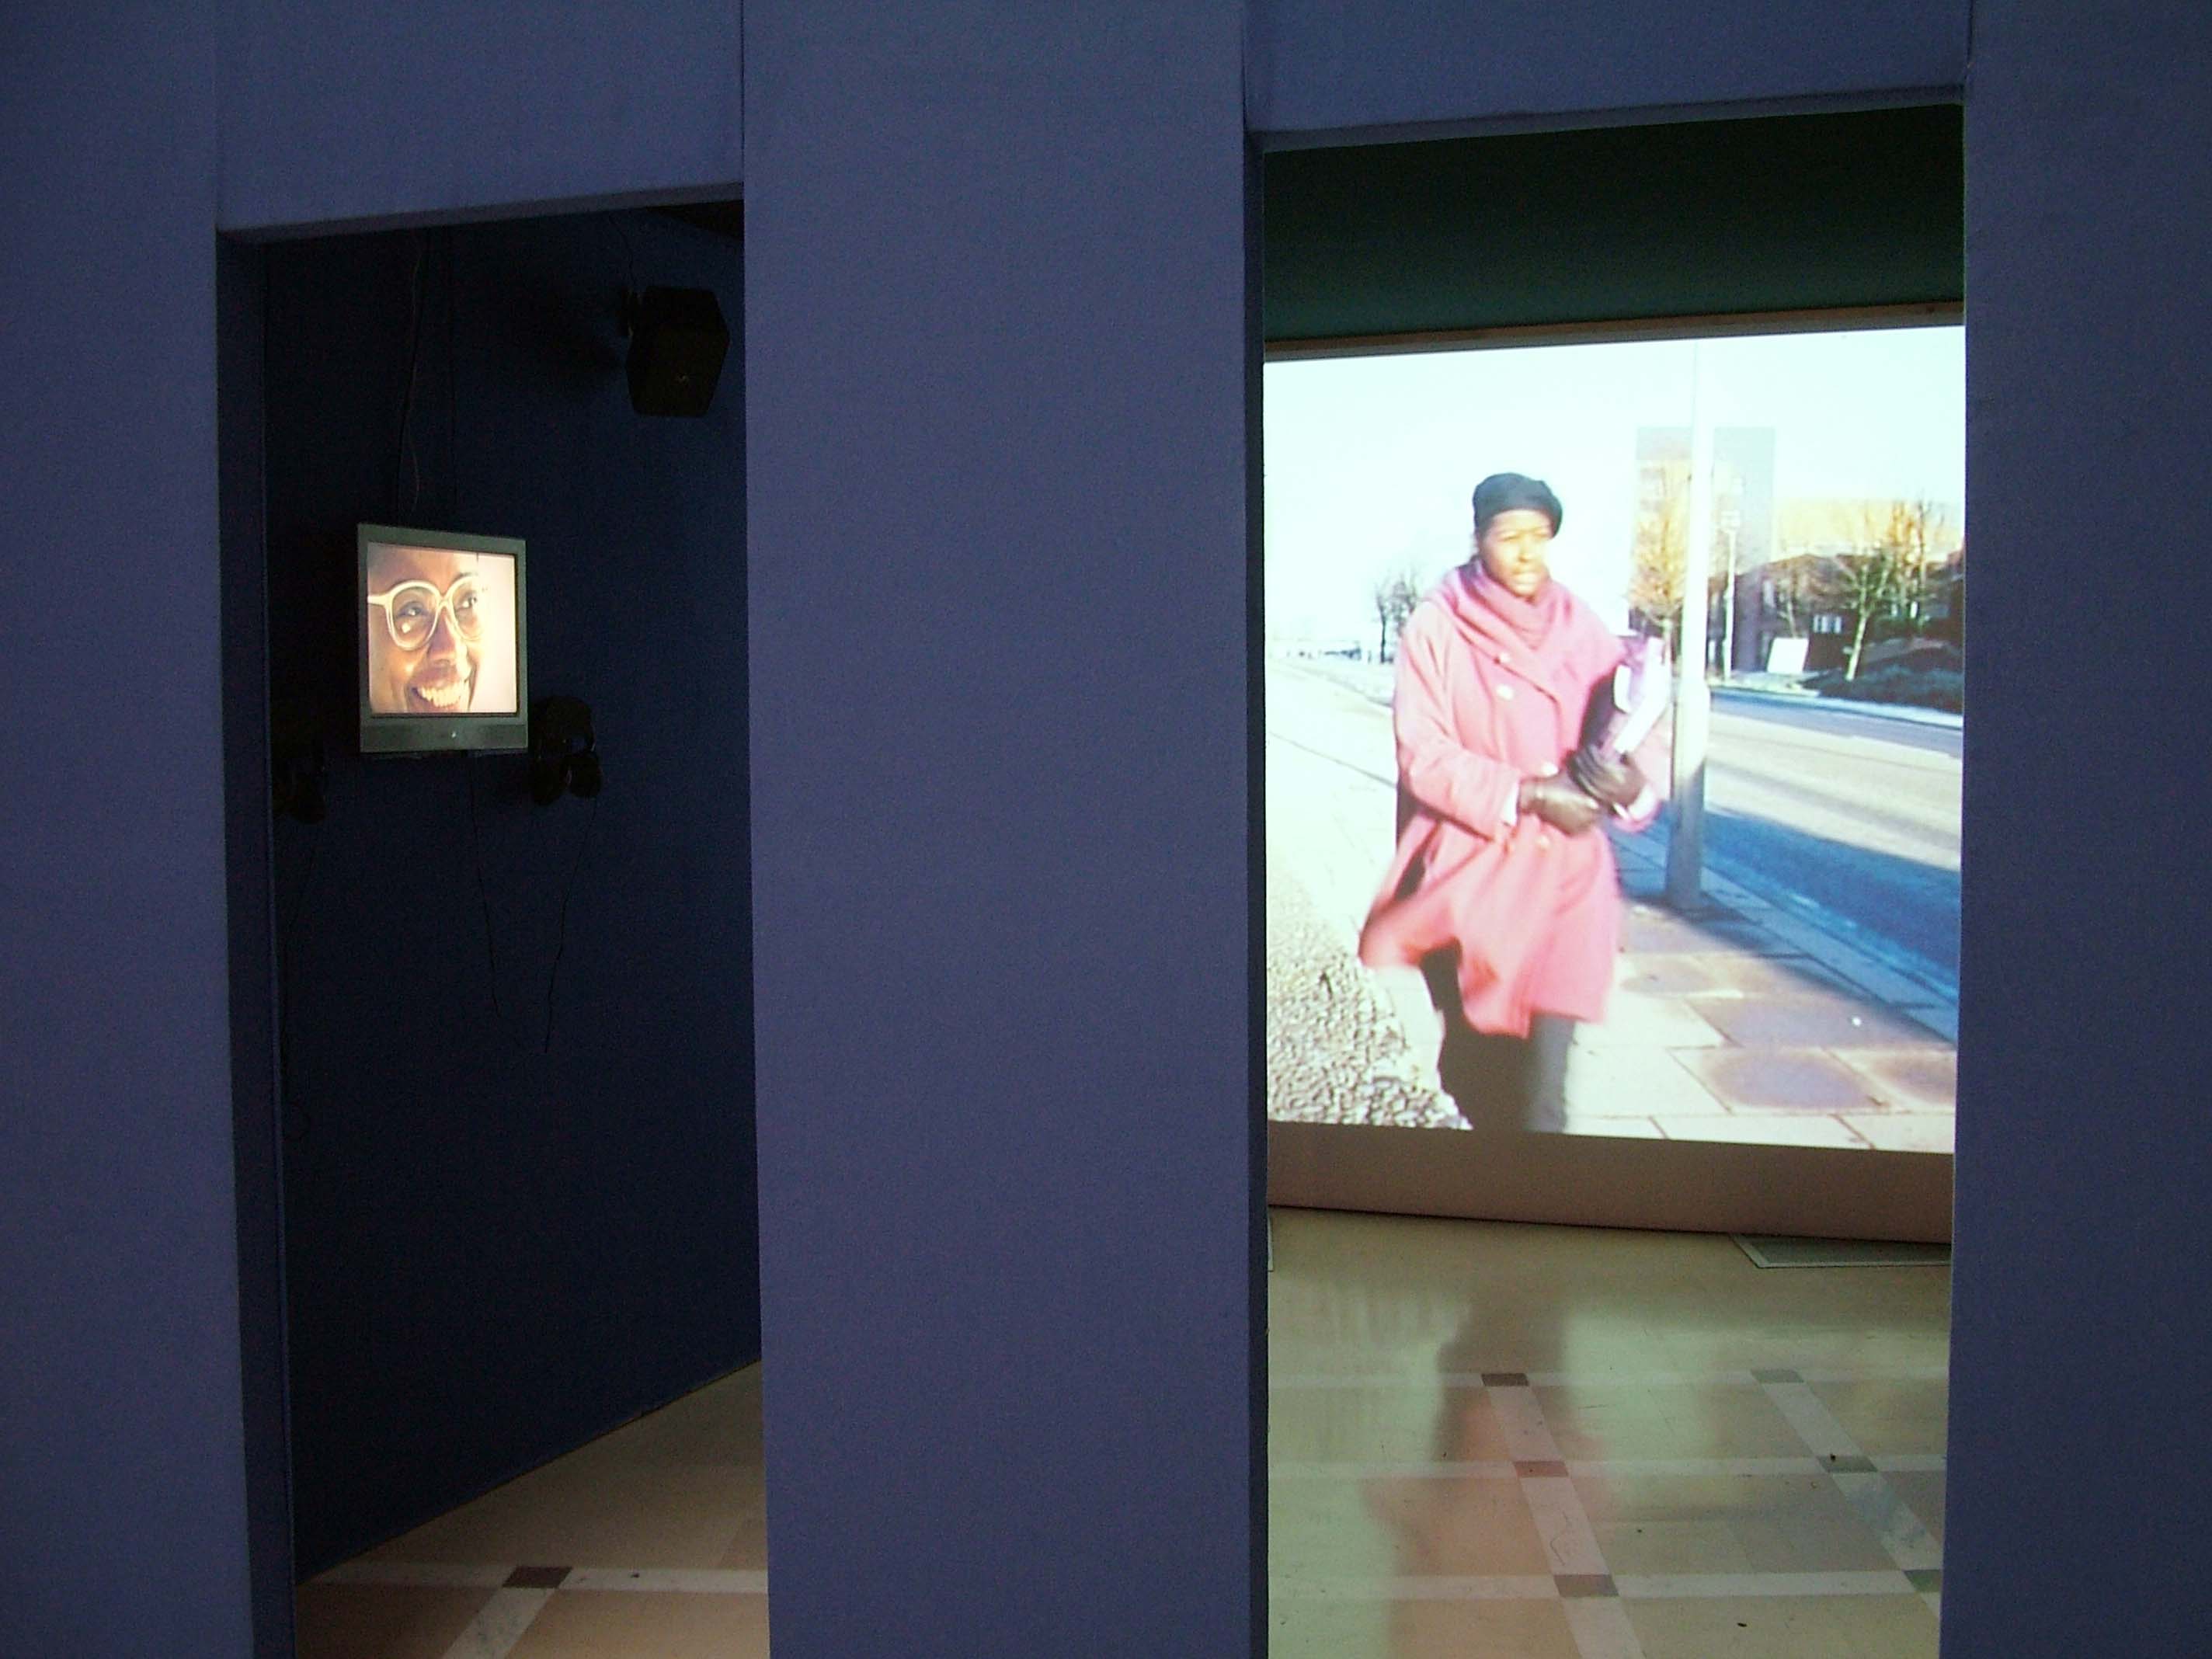 Exposition Latitudes 2004, Paris: Présentation des vidéos des Joëlle Ferly